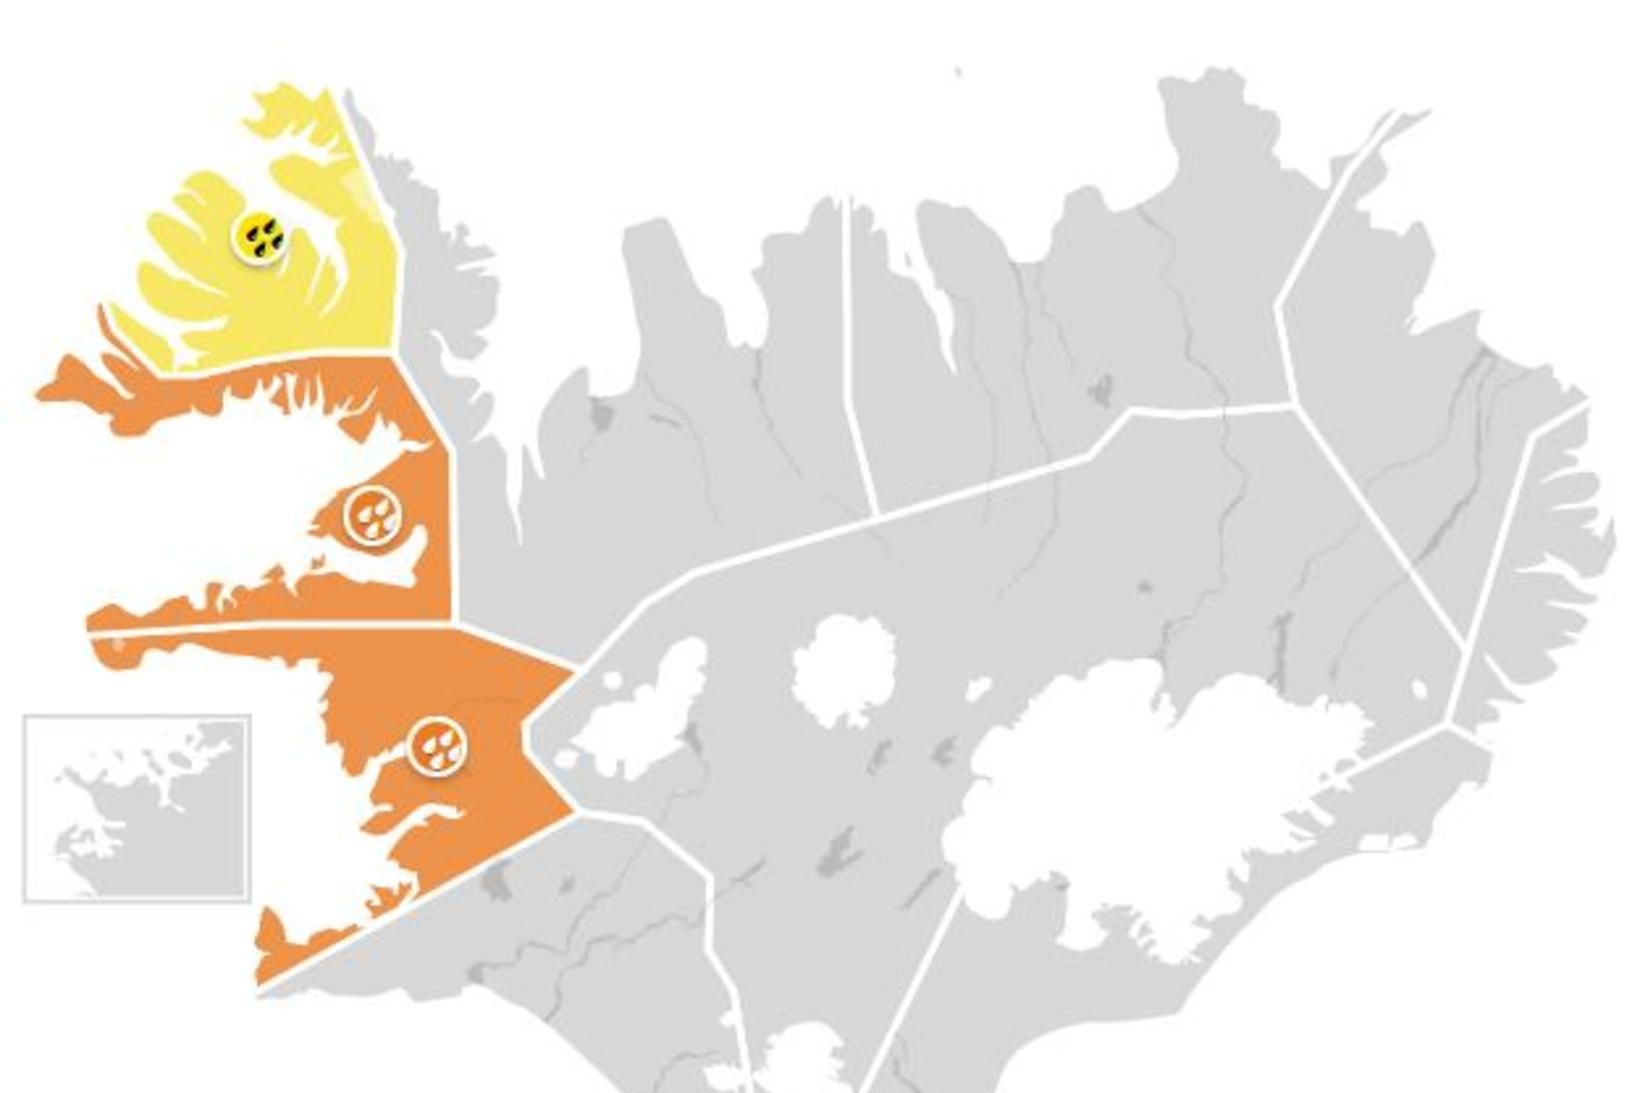 Appelsínugul viðvörun er í gildi á Faxaflóa og í Breiðafirði. …